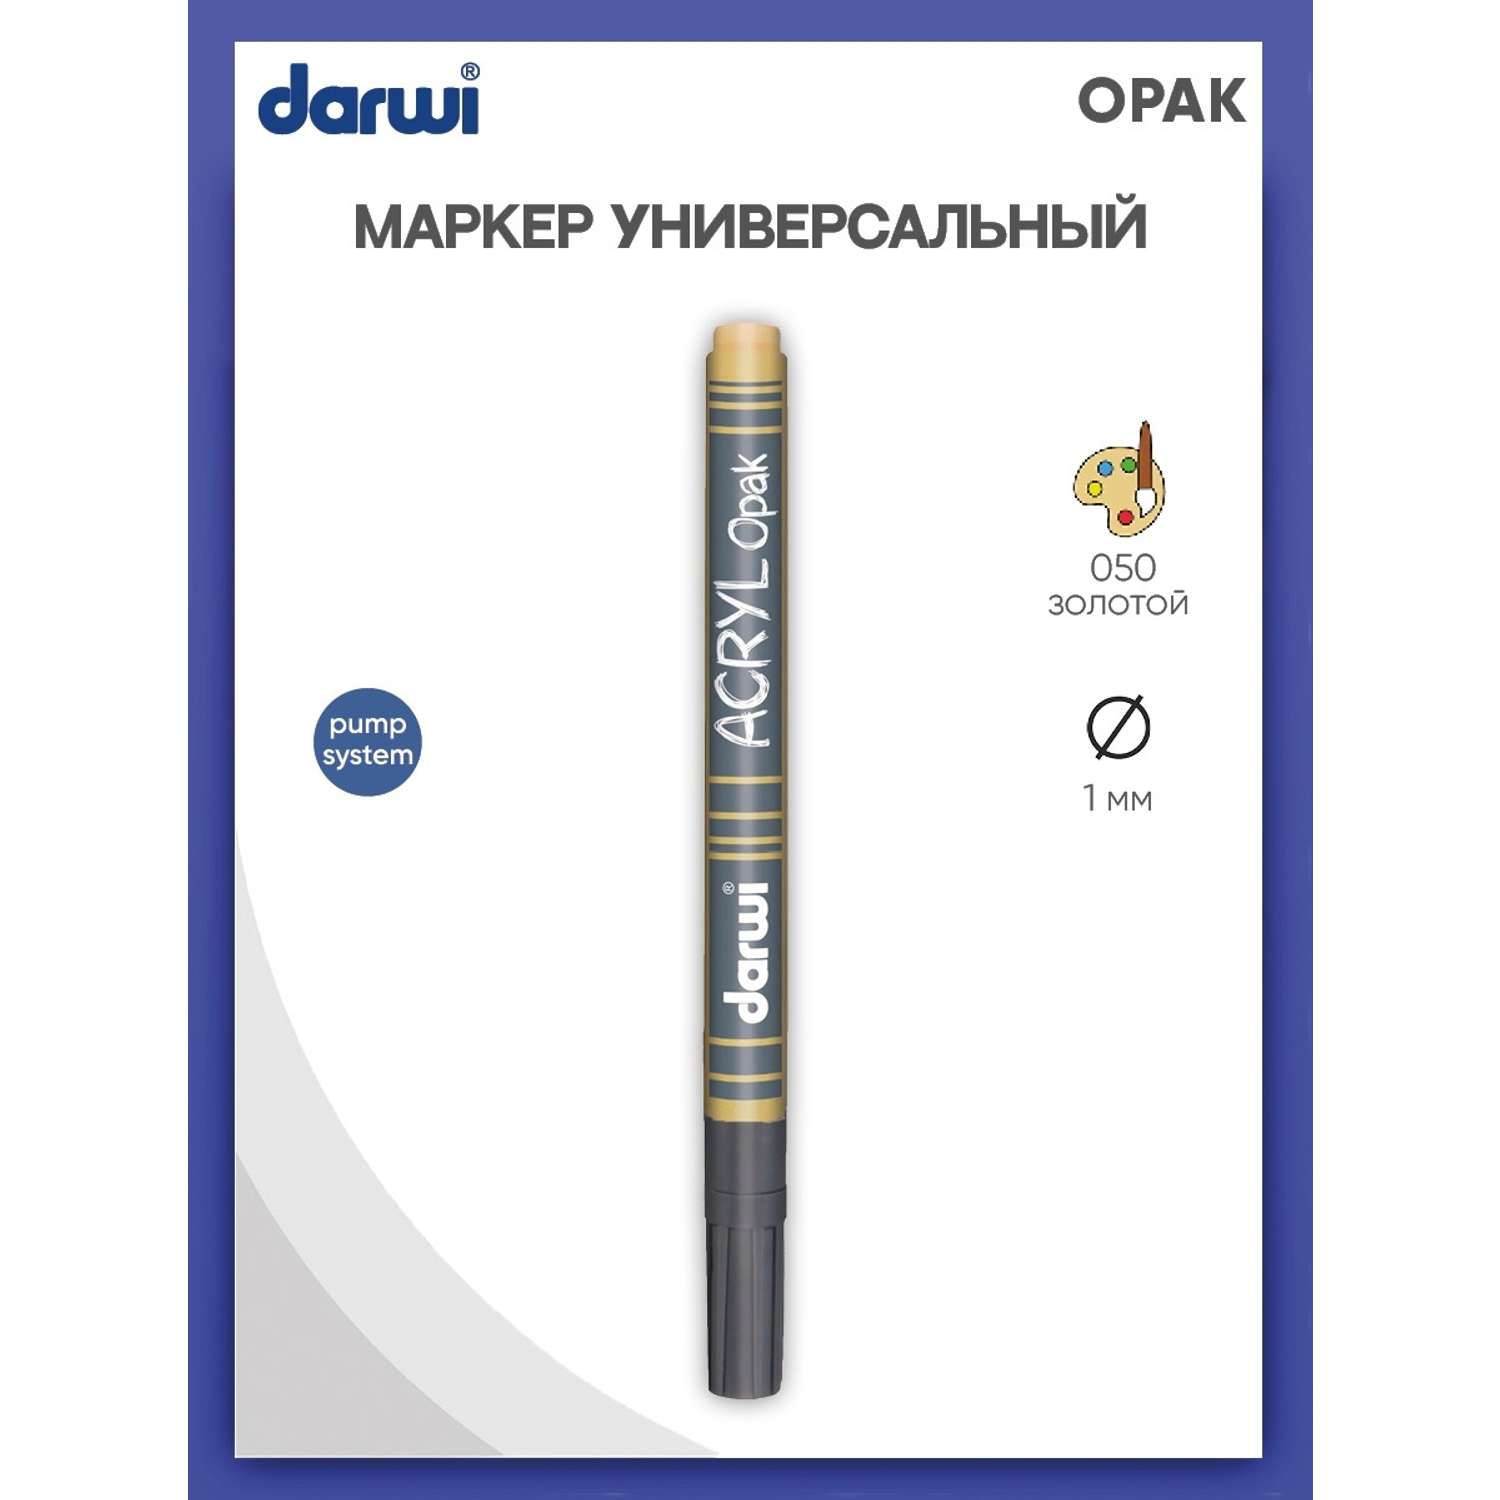 Маркер Darwi акриловый OPAK DA0220014 1 мм укрывистый 050 золотой - фото 1